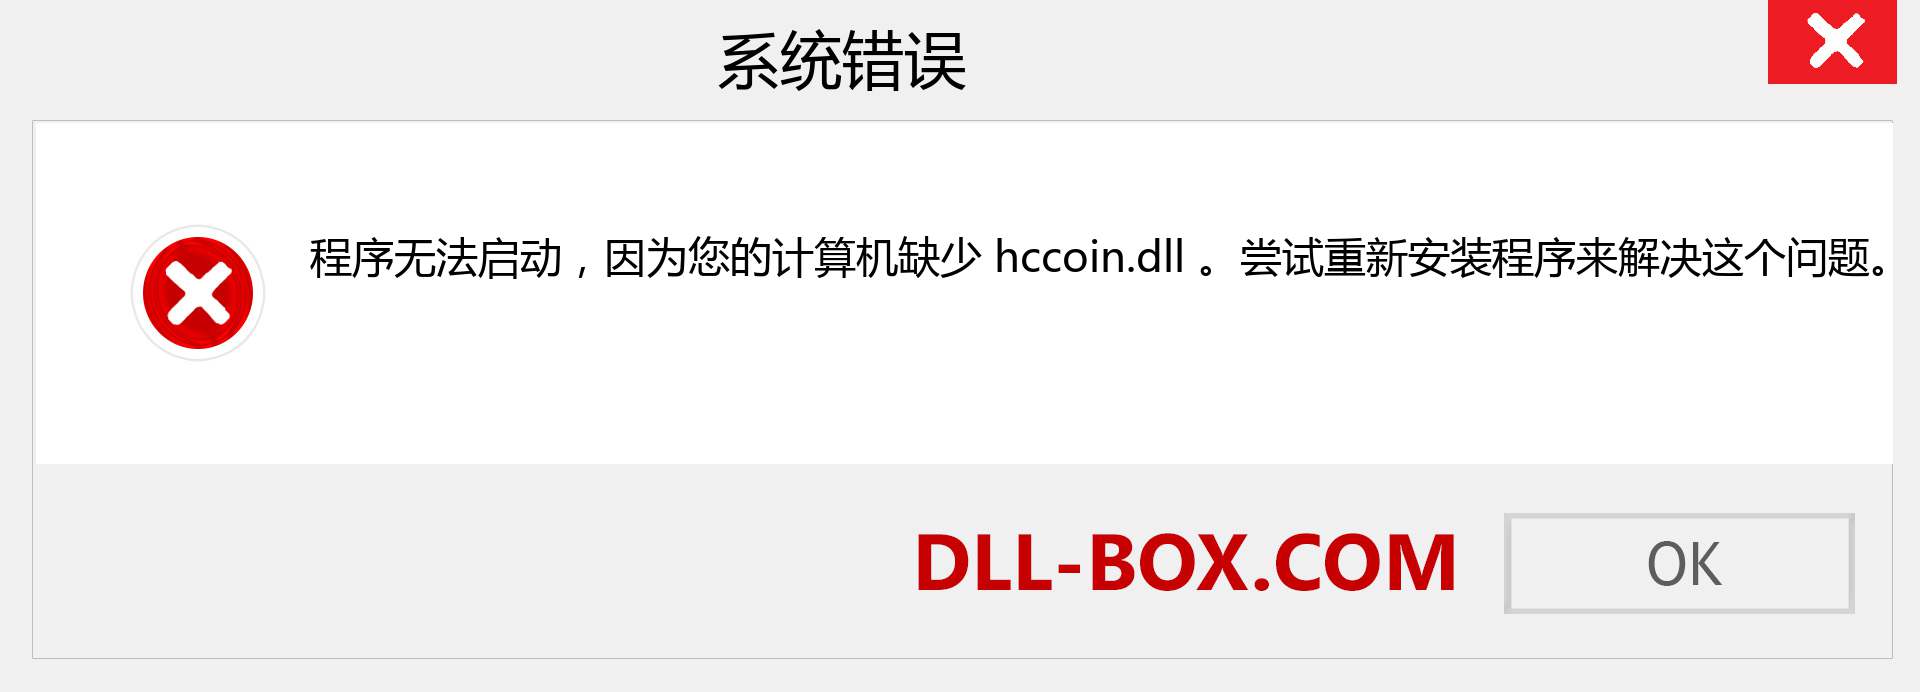 hccoin.dll 文件丢失？。 适用于 Windows 7、8、10 的下载 - 修复 Windows、照片、图像上的 hccoin dll 丢失错误